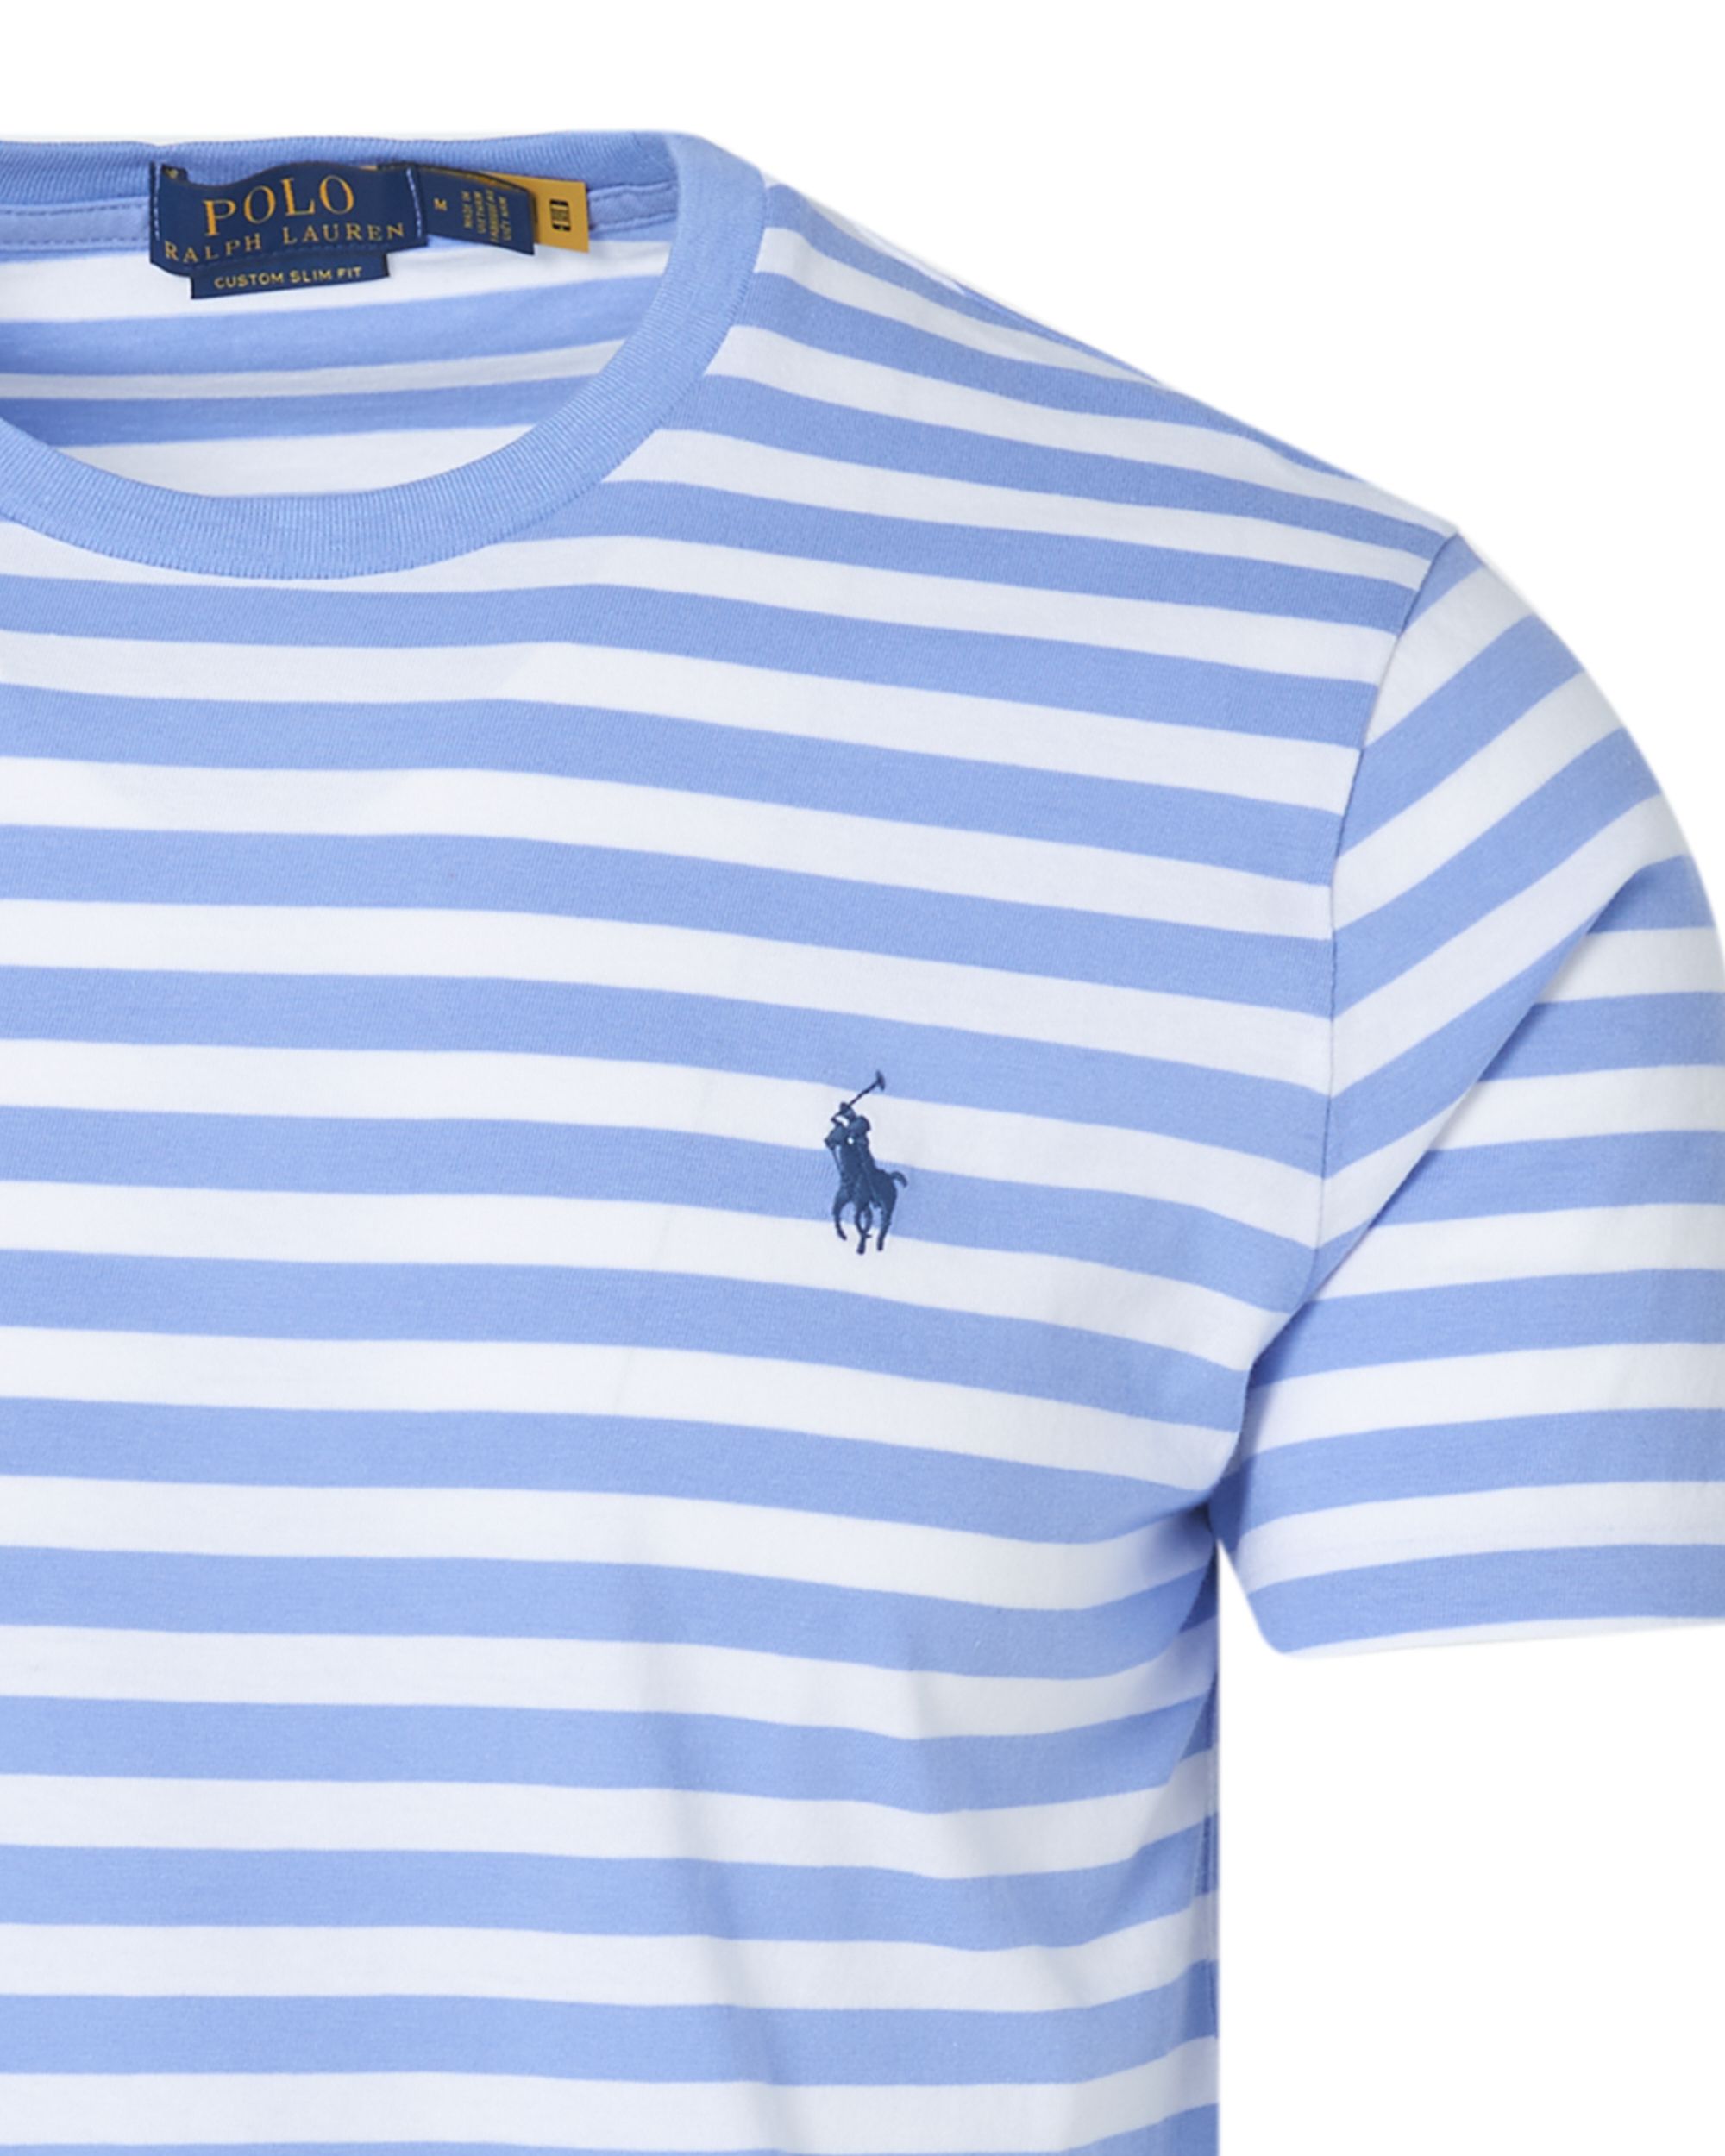 Polo Ralph Lauren T-shirt KM Licht blauw 083499-001-L